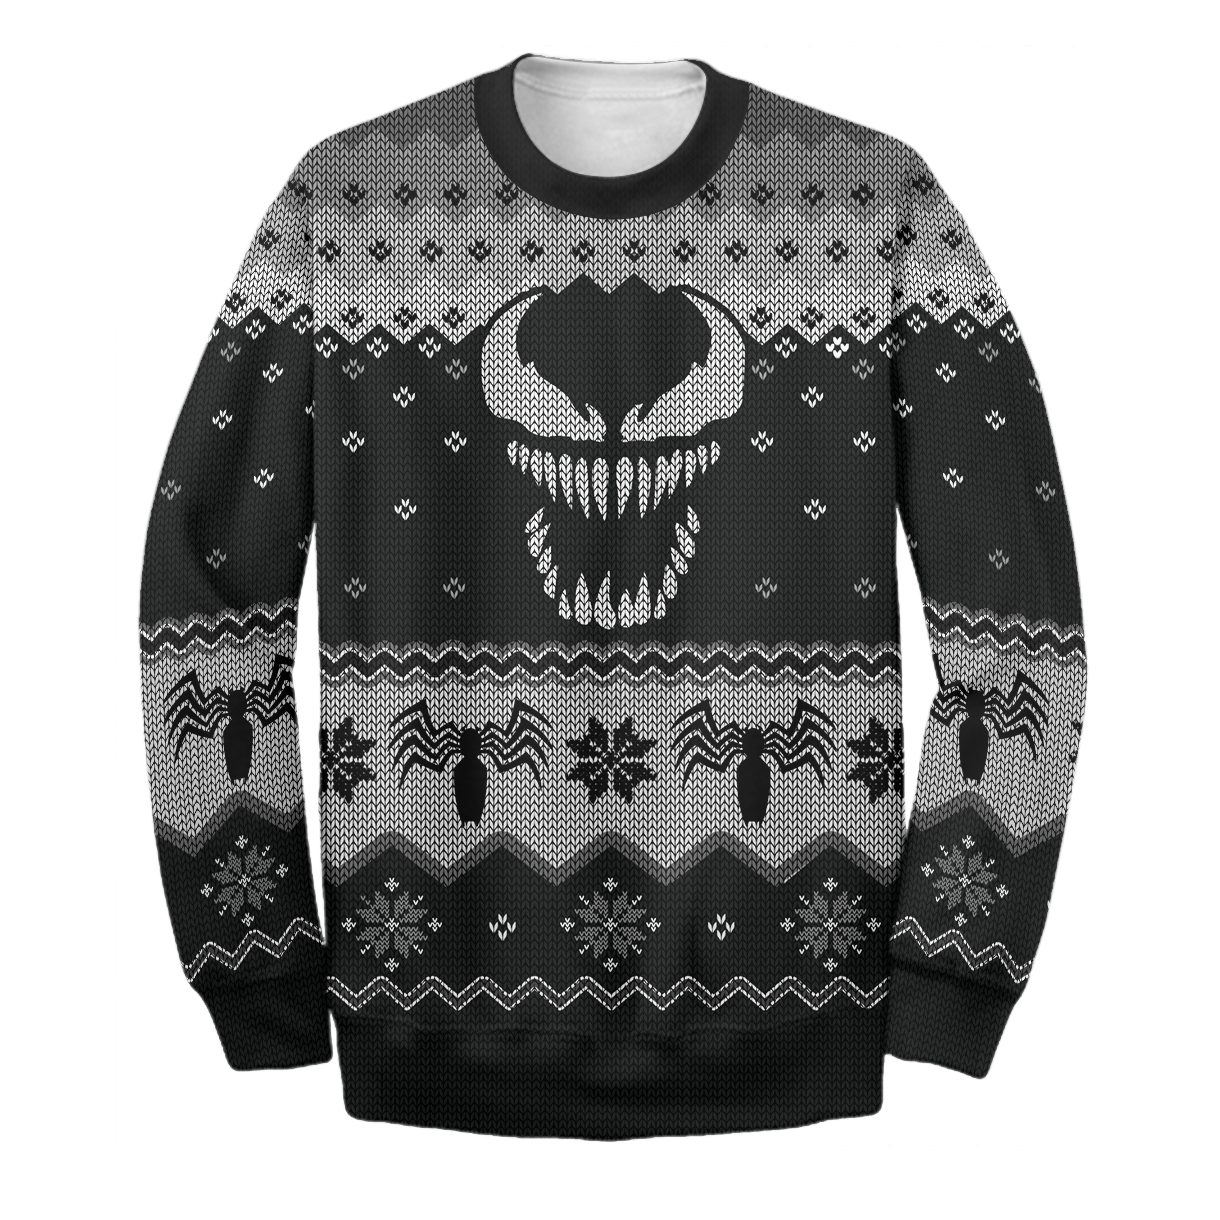 Unifinz Venom MV Sweater Venom Ugly Long Sleeve Printing Amazing Venom MV Sweatshirt 2022